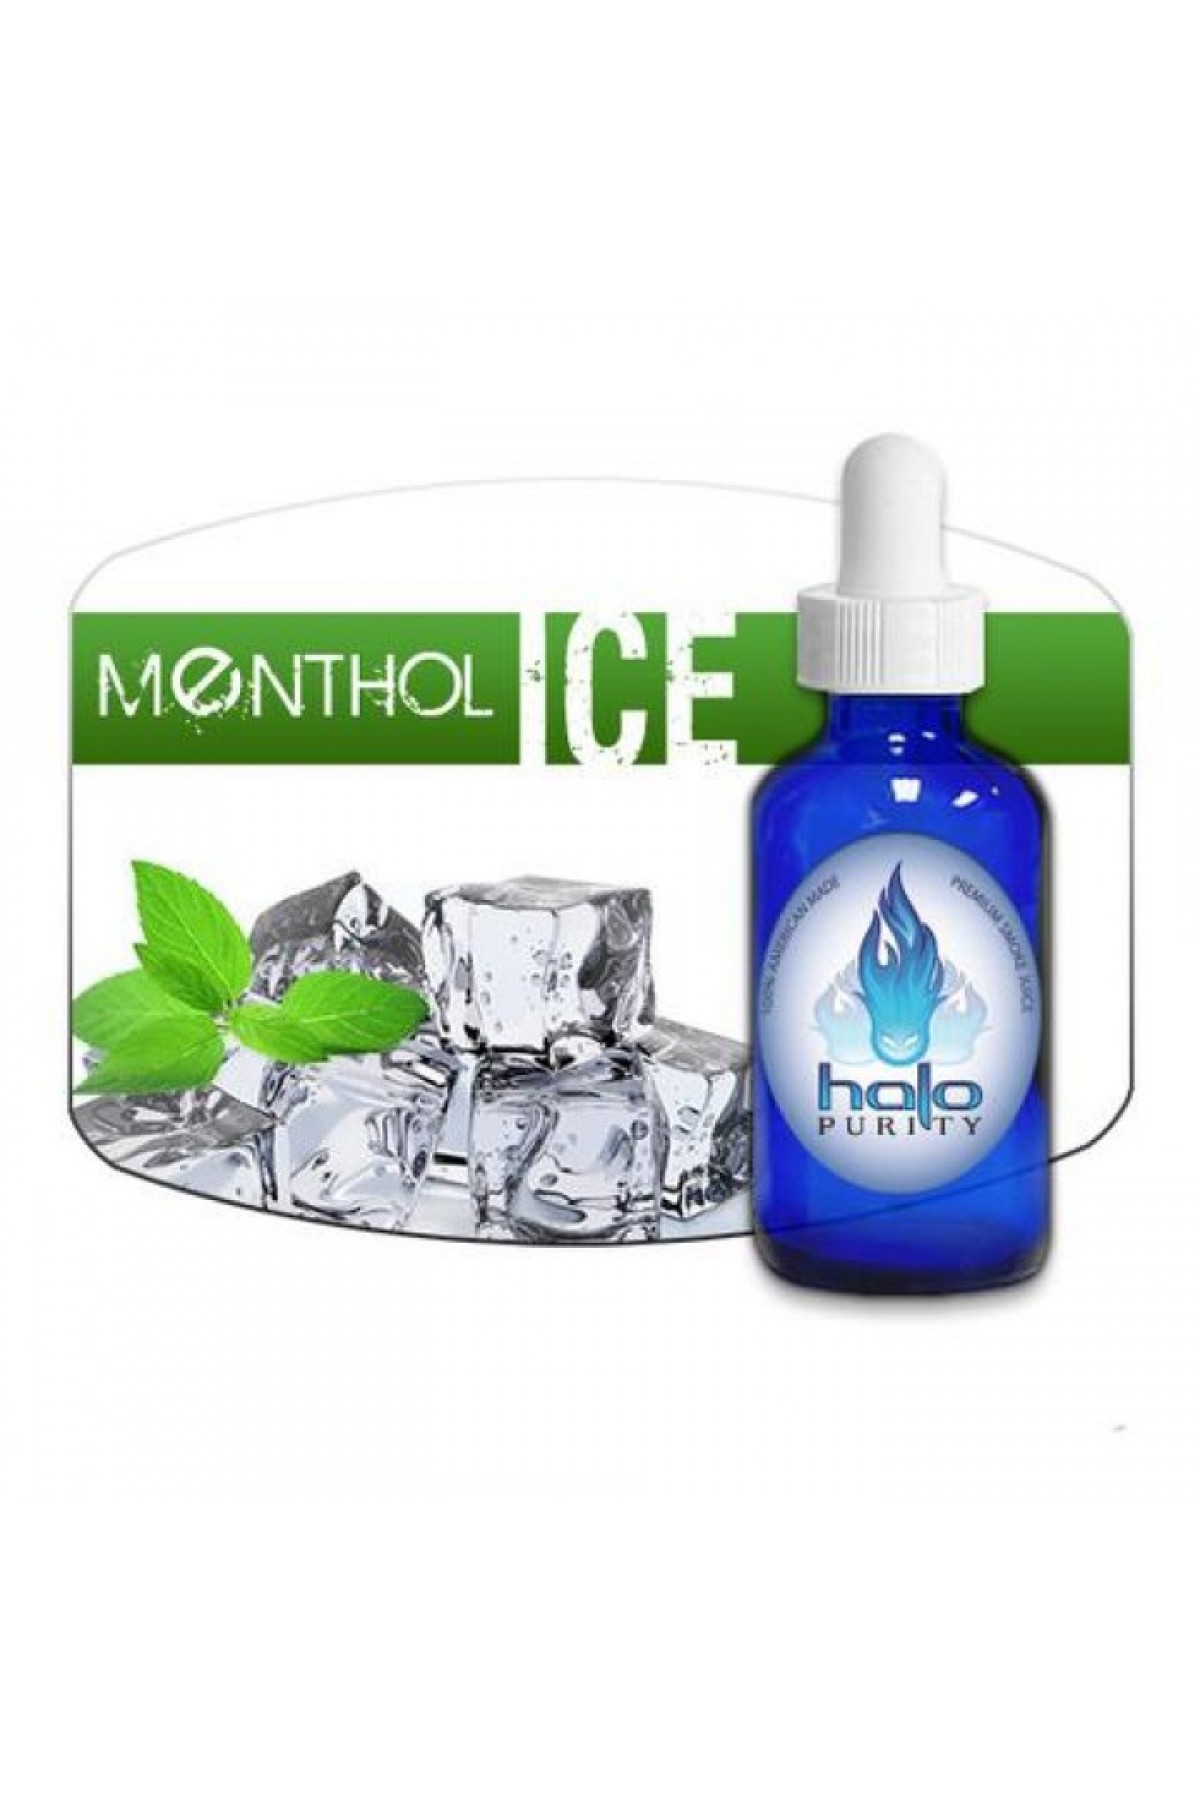 Halo Menthol Ice (30 ML)